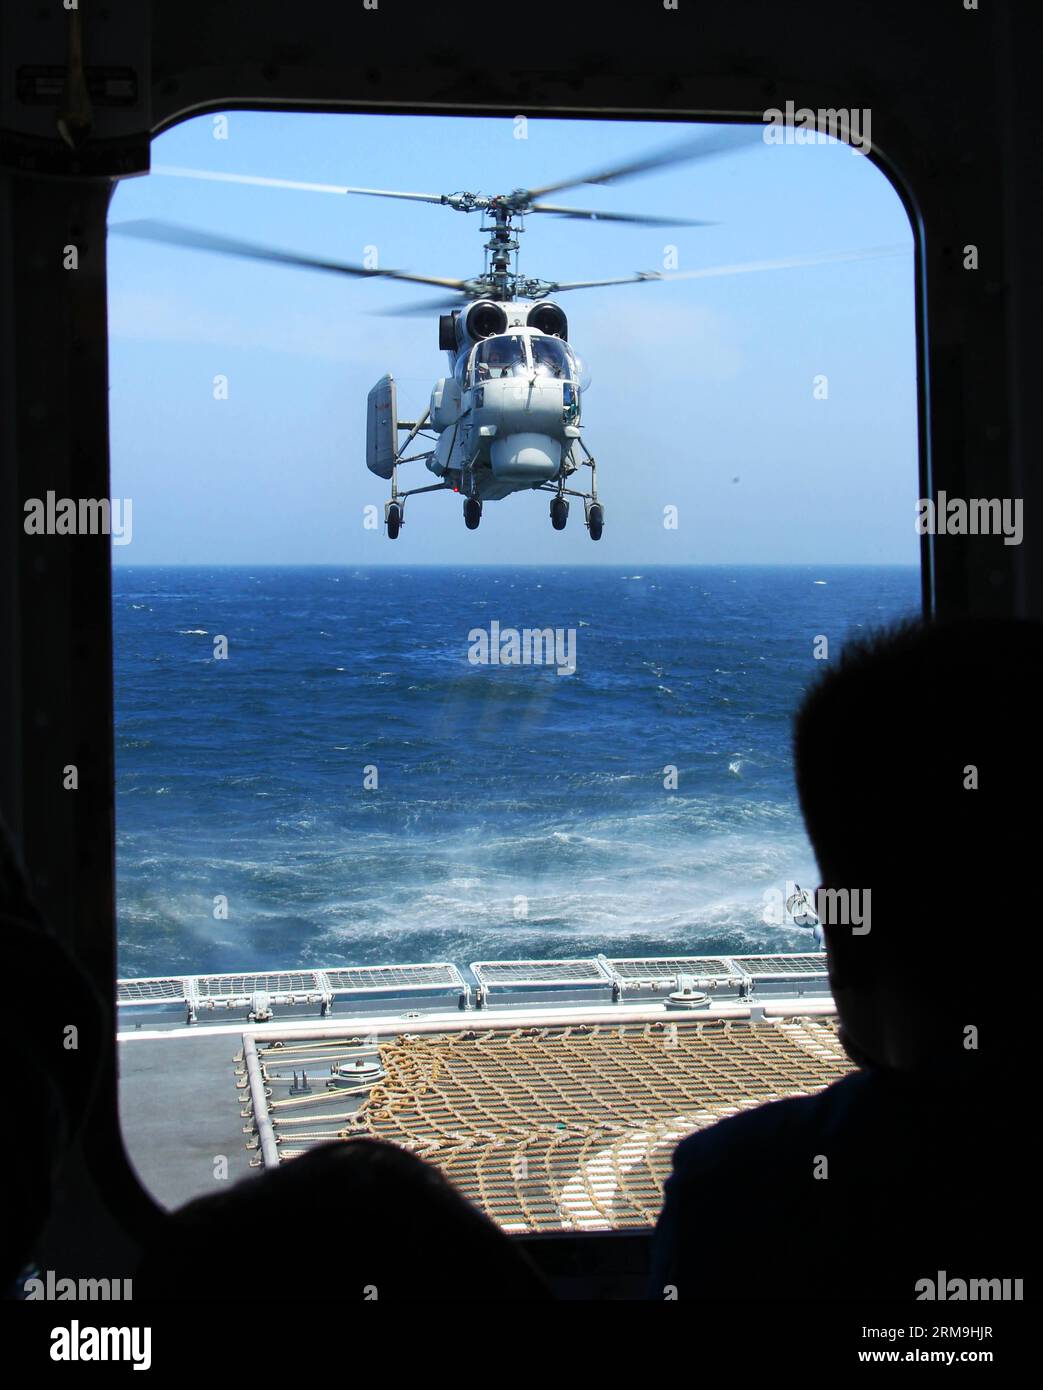 Un elicottero della marina torna al cacciatorpediniere missilistico cinese Zhengzhou durante l'esercitazione navale congiunta Cina-Russia sul Mar Cinese Orientale, 24 maggio 2014. La trivellazione di tre giorni Joint Sea-2014 si è conclusa con successo sabato. Le marine cinesi e russe organizzarono esercitazioni, tra cui esercitazioni congiunte di scorta, esercitazioni congiunte di identificazione degli aerei e esercitazioni di difesa aerea e assalto marittimo. (Xinhua/Zha Chunming) (zgp) CINA-CINA ORIENTALE SEA-RUSSIA-JOINT NAVAL DRILLS (CN) PUBLICATIONxNOTxINxCHN un elicottero della Marina torna al distruttore missilistico di Zhengzhou in Cina durante la China Russia Joint Naval Drill SUL Mare della Cina orientale Foto Stock